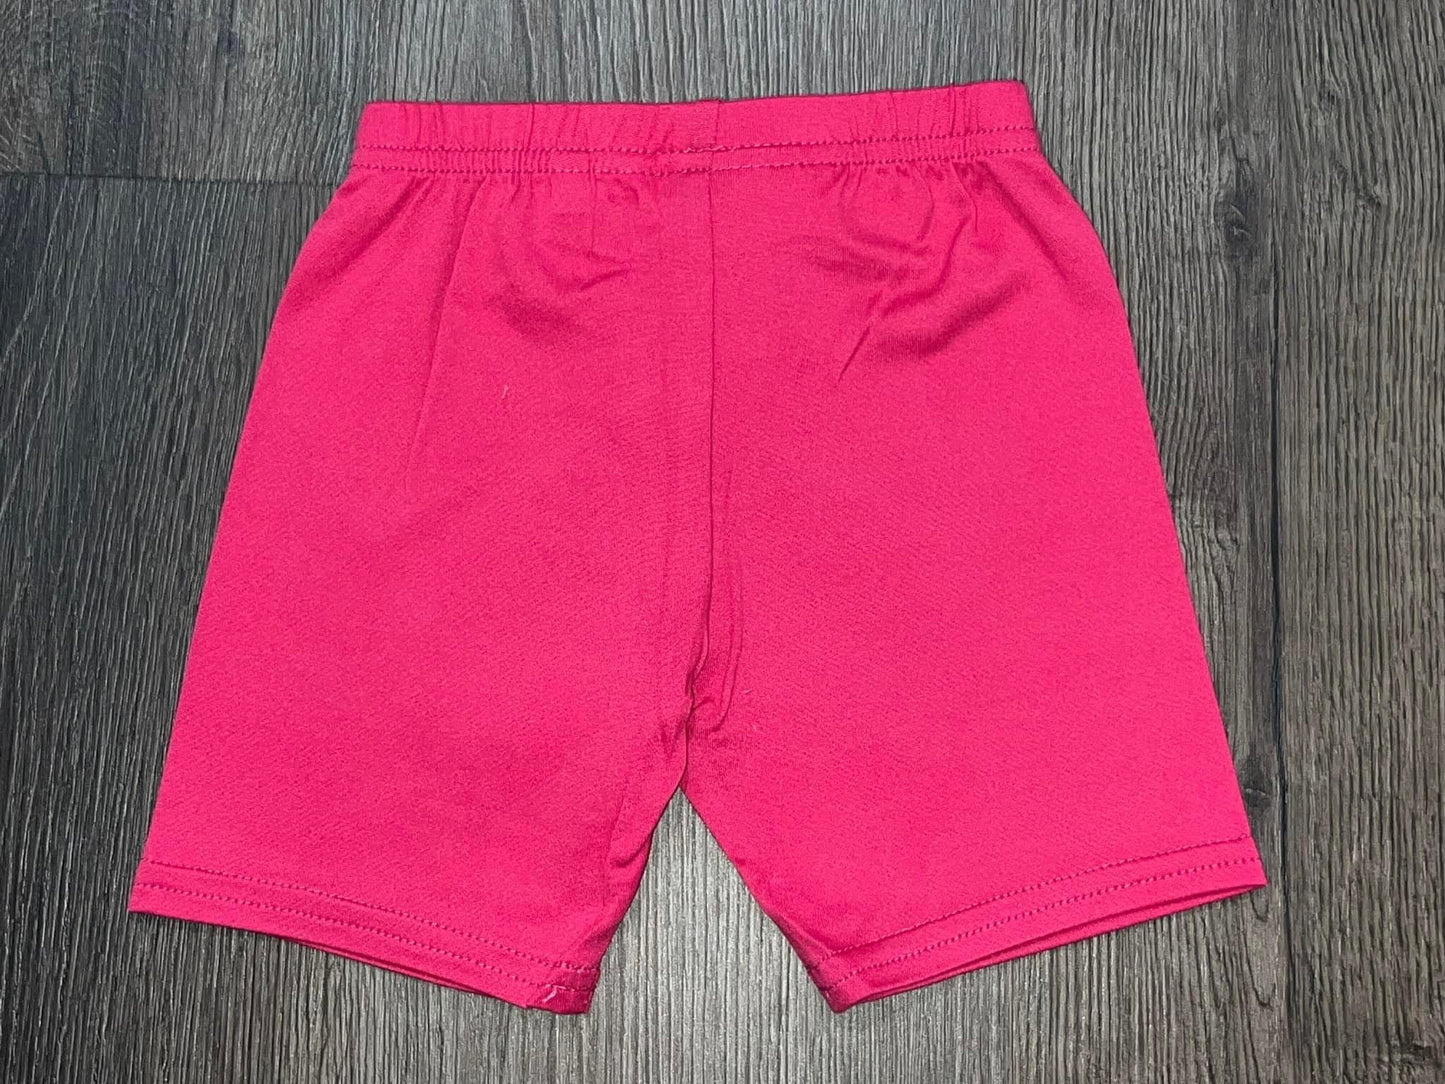 Hot pink shorts